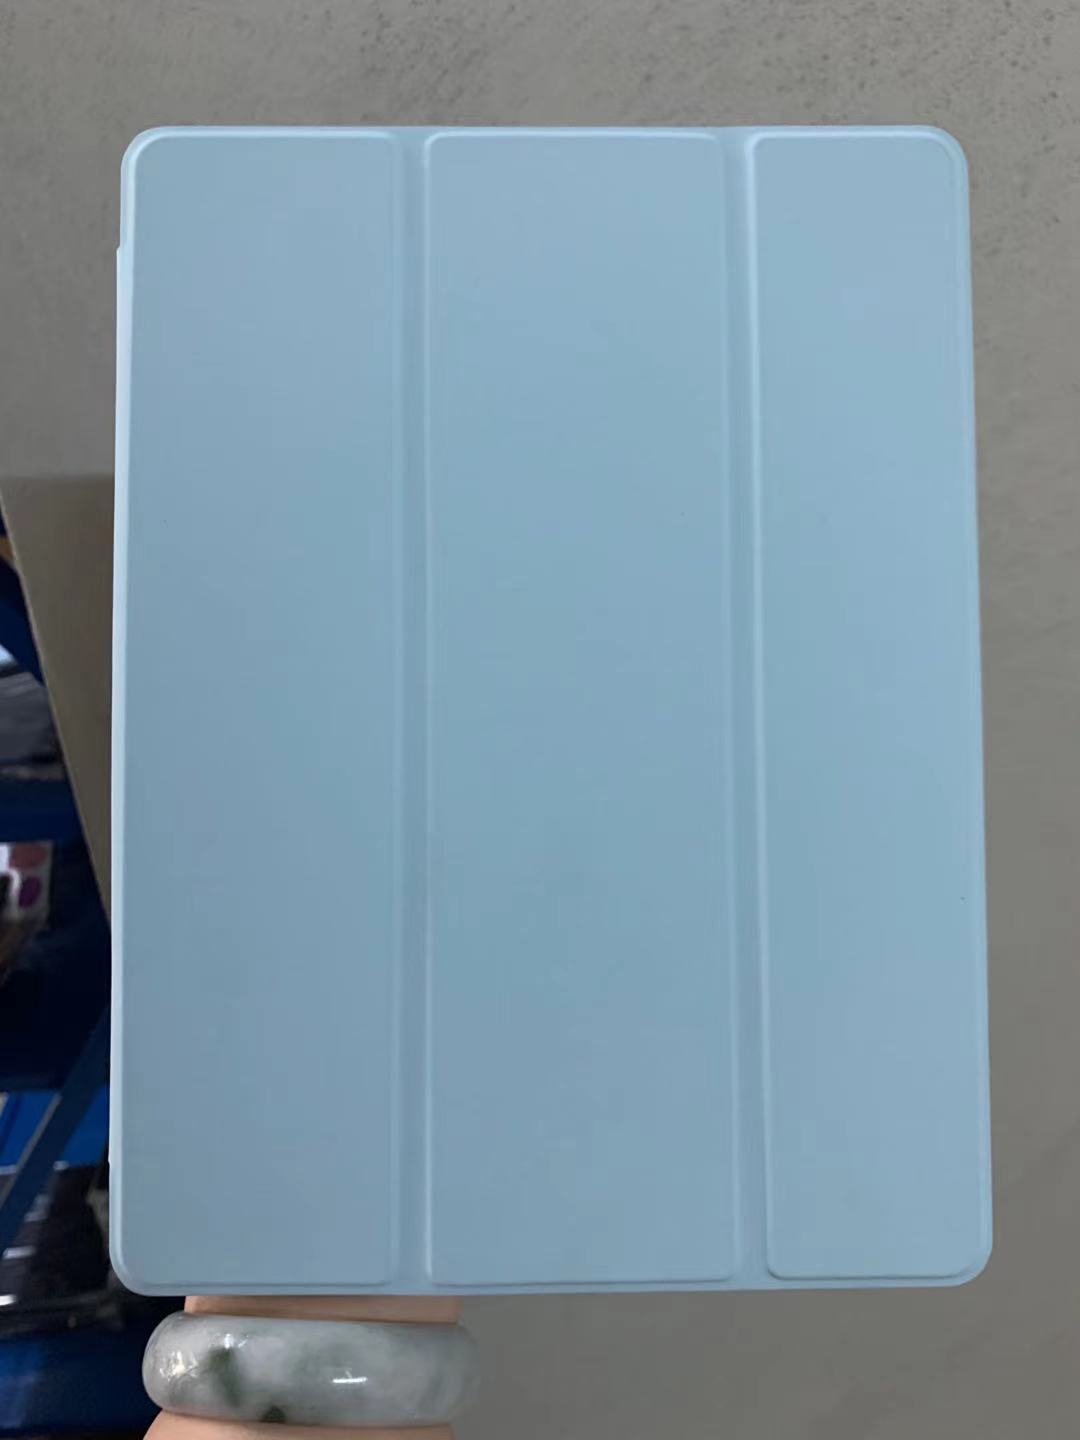 【พร้อมส่ง】ipad 9.7 gen7/8/9 10.2 10.5 2019 ใส่ปากกาได้ มี 3 สีจร้า เคสipad Air3 2018 2017 ipad case ซองหนัง ipad Air2 gen6. 皮纹 สี สีฟ้า สี สีฟ้ารูปแบบรุ่นที่ีรองรับ Air1 Air2  9.7